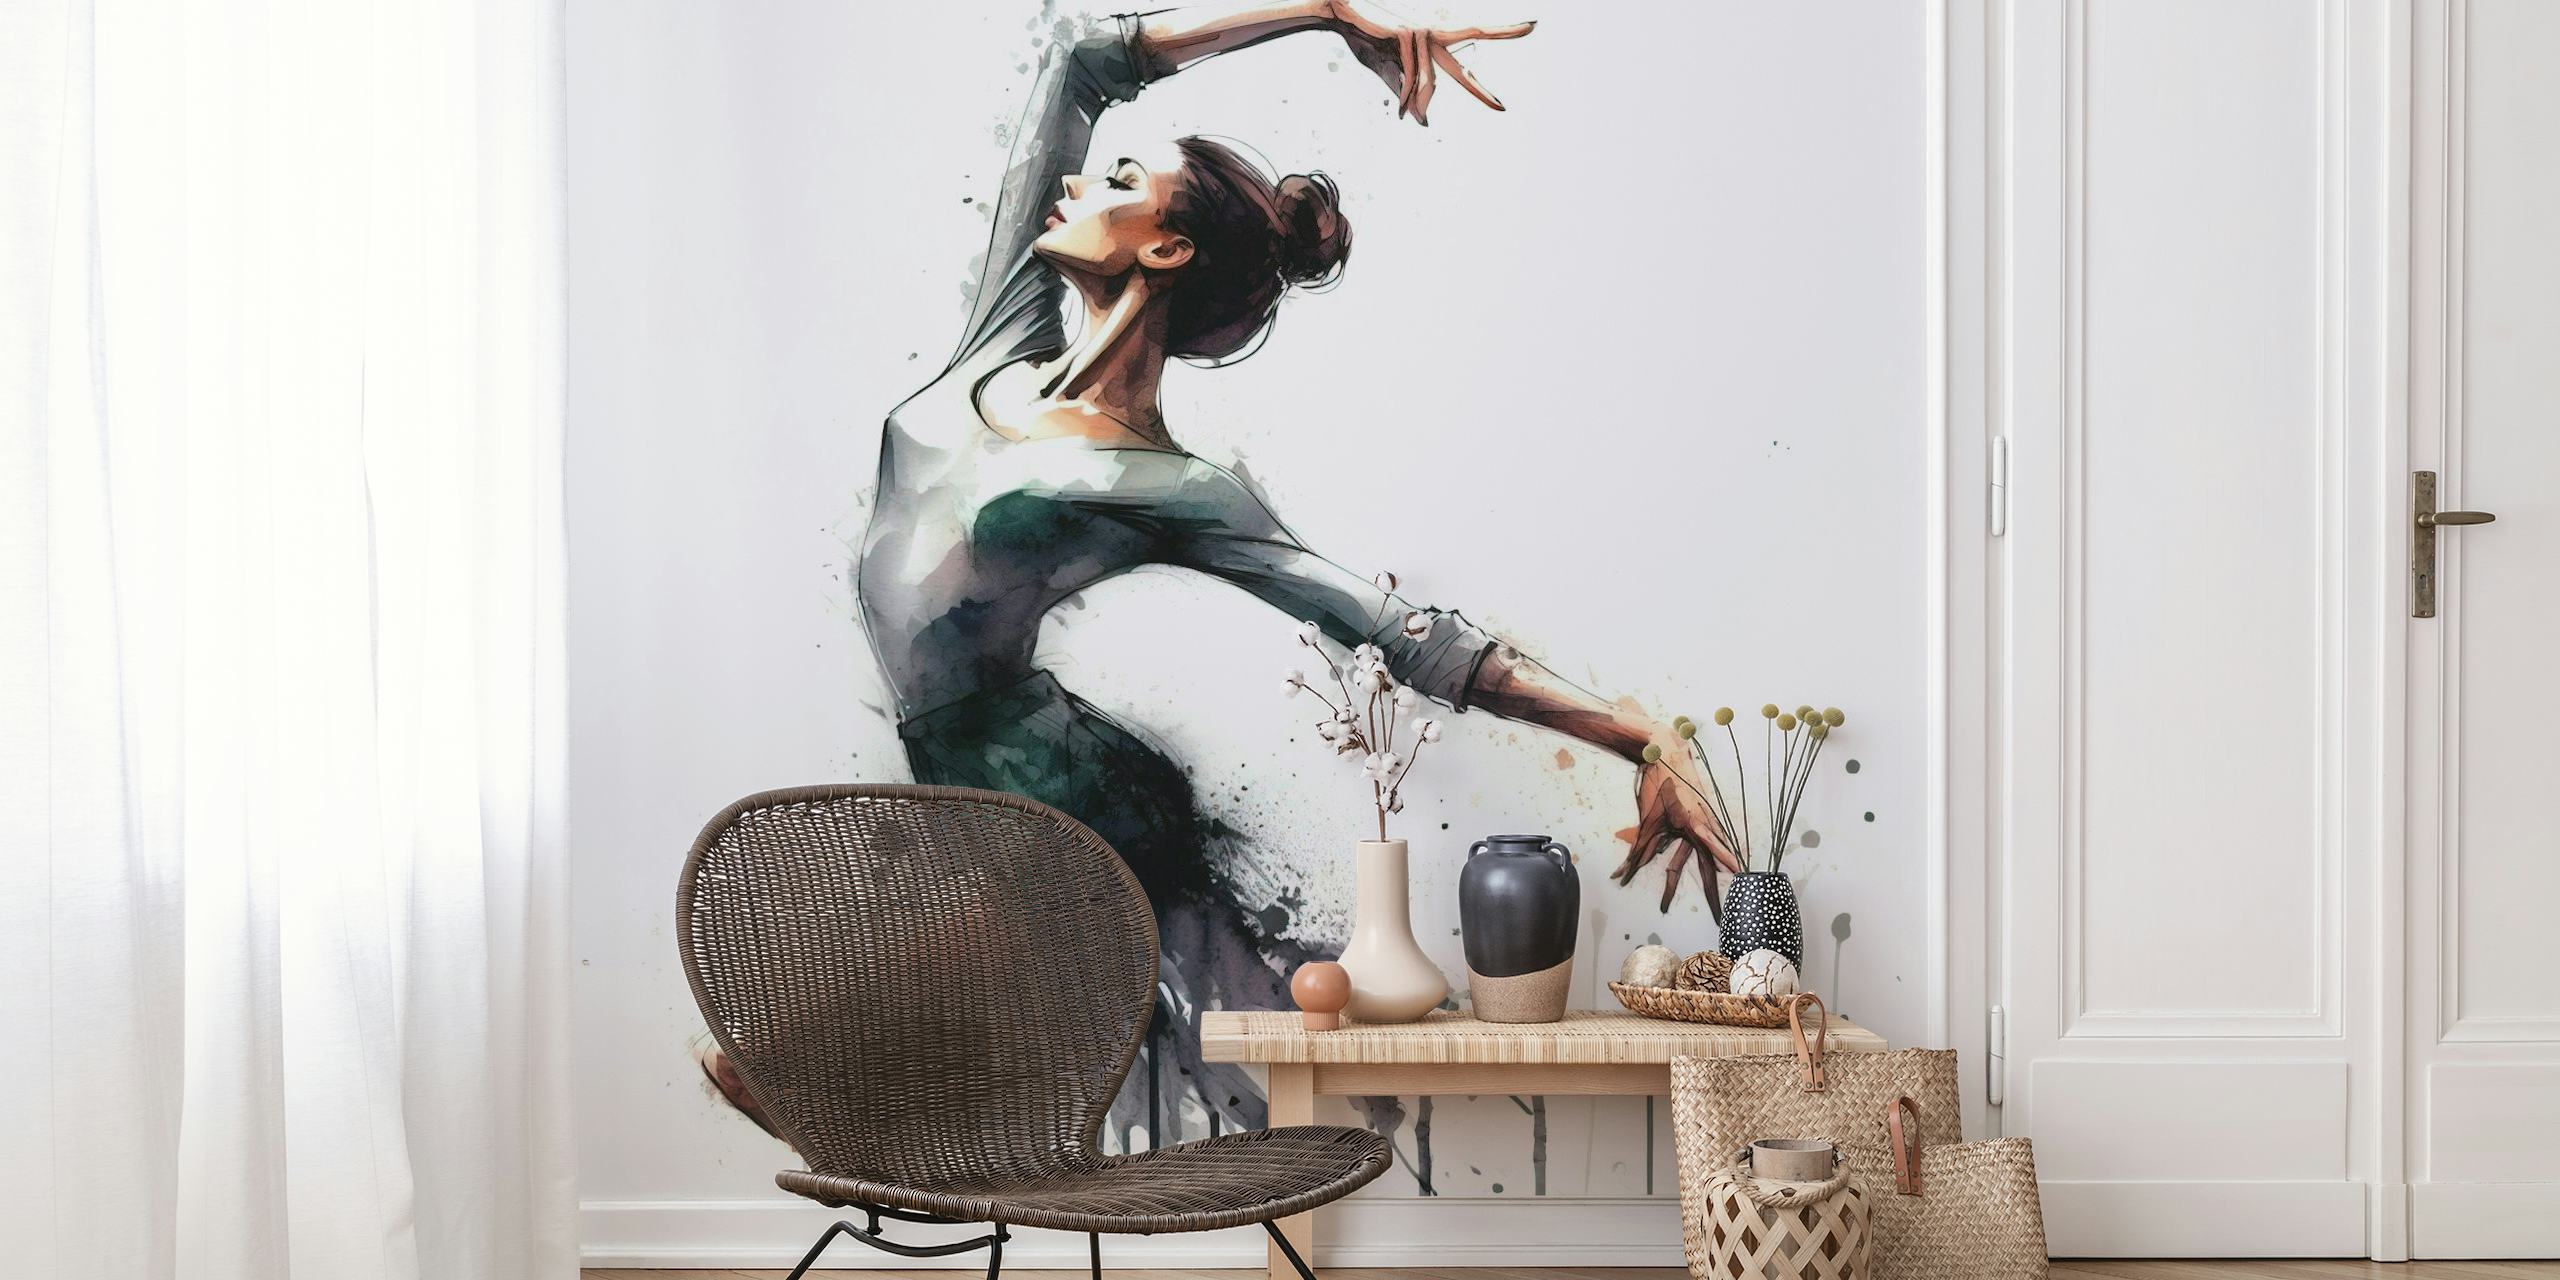 Kunstnerisk akvarell veggmaleri av en ballettdanser i bevegelse